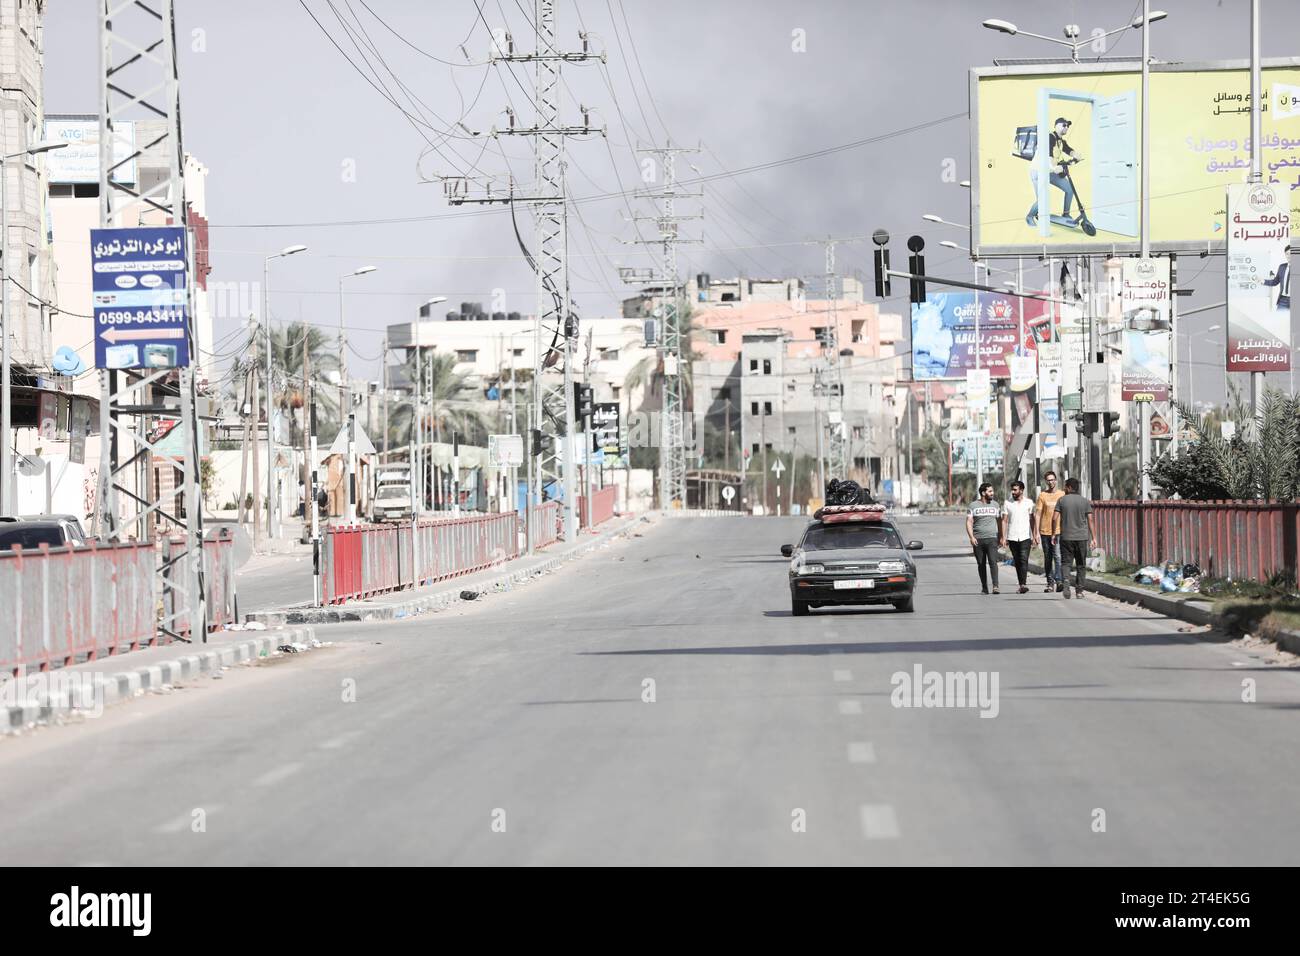 Palästinenser fahren ein Auto mit Habseligkeiten, während Rauch im Hintergrund aufsteigt, während sie aus dem Flüchtlingslager Nuseirat fliehen Palästinenser fahren ein Auto mit Habseligkeiten, während Rauch im Hintergrund auftaucht, während sie am 30. Oktober 2023 aus dem Flüchtlingslager Nuseirat im zentralen Gazastreifen fliehen. zwischen Israel und der palästinensischen Gruppe Hamas. Foto: Naaman Omar apaimages Nuseirat Gaza Streifen palästinensisches Gebiet 301023 Nuseirat NAA 0015 Copyright: XapaimagesxNaamanxOmarxxxapaimagesx Credit: Imago/Alamy Live News Stockfoto